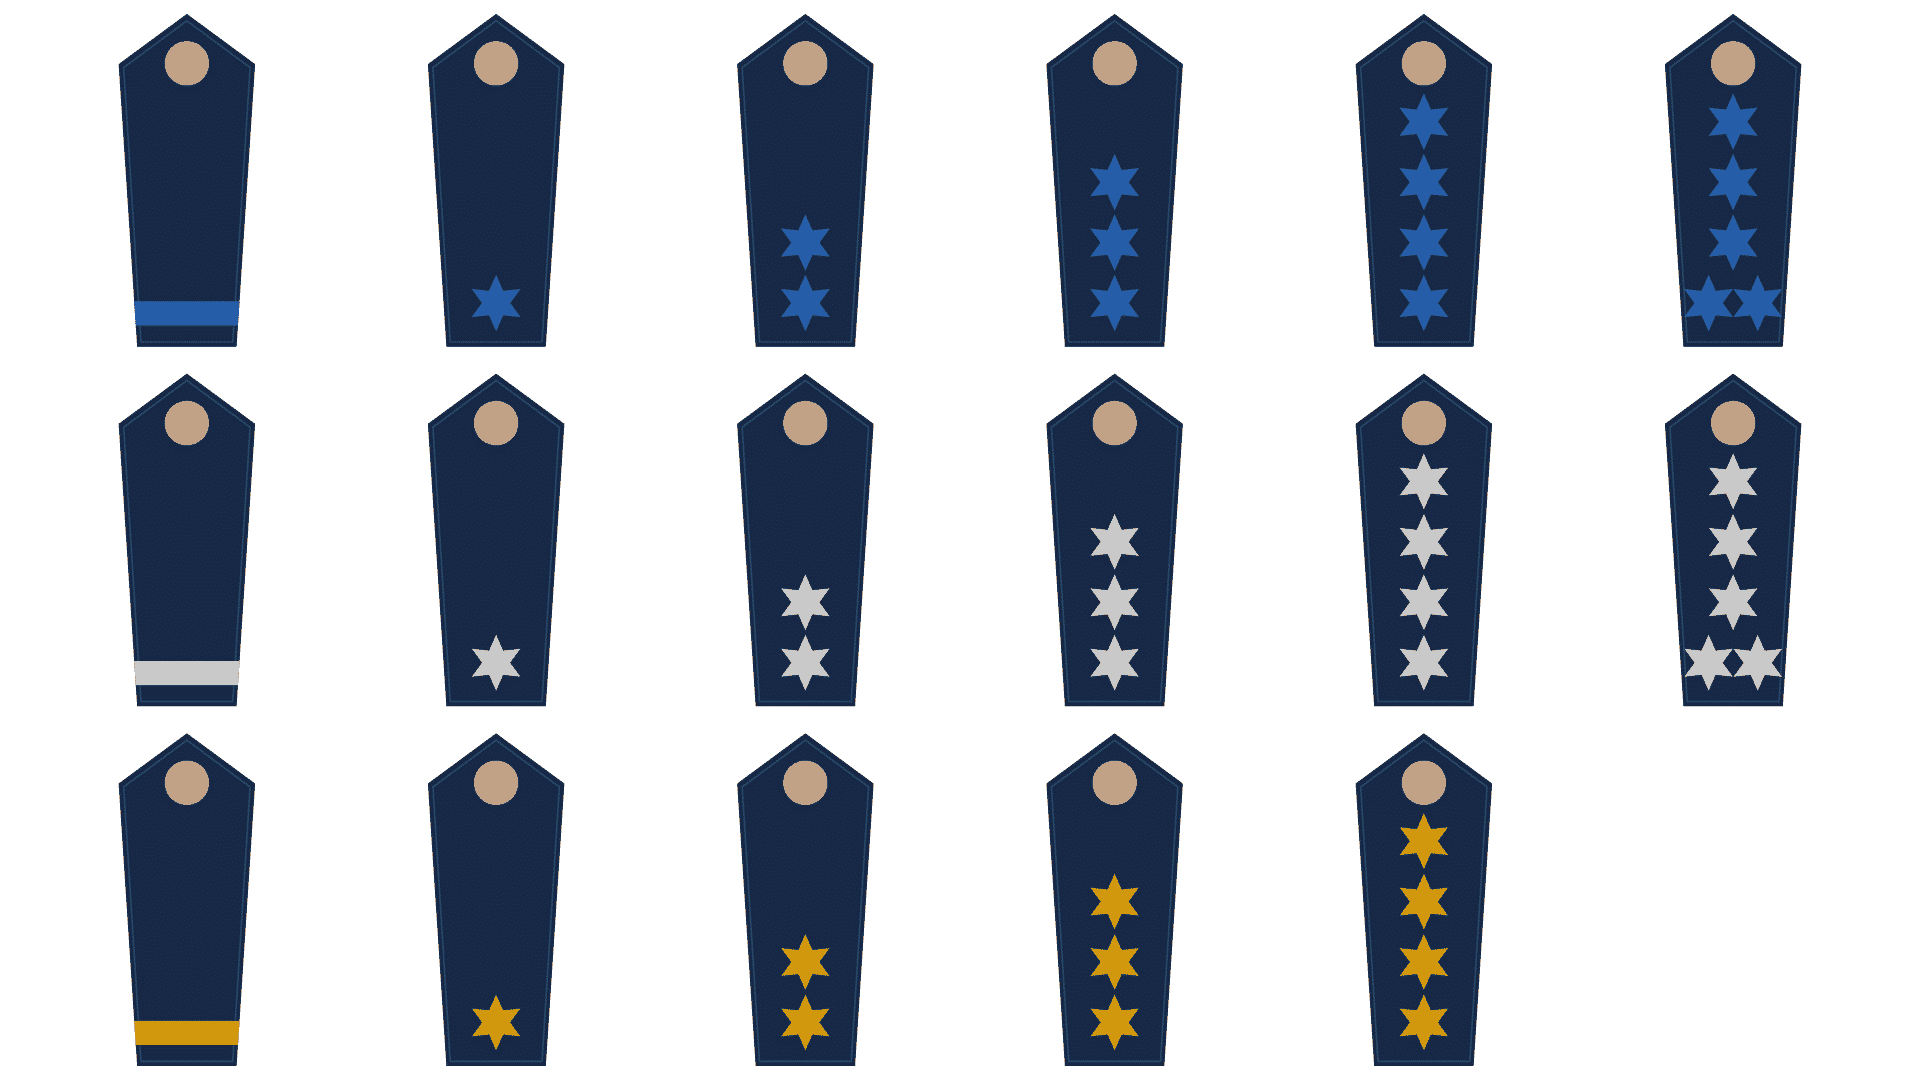 Polizei Dienstabzeichen